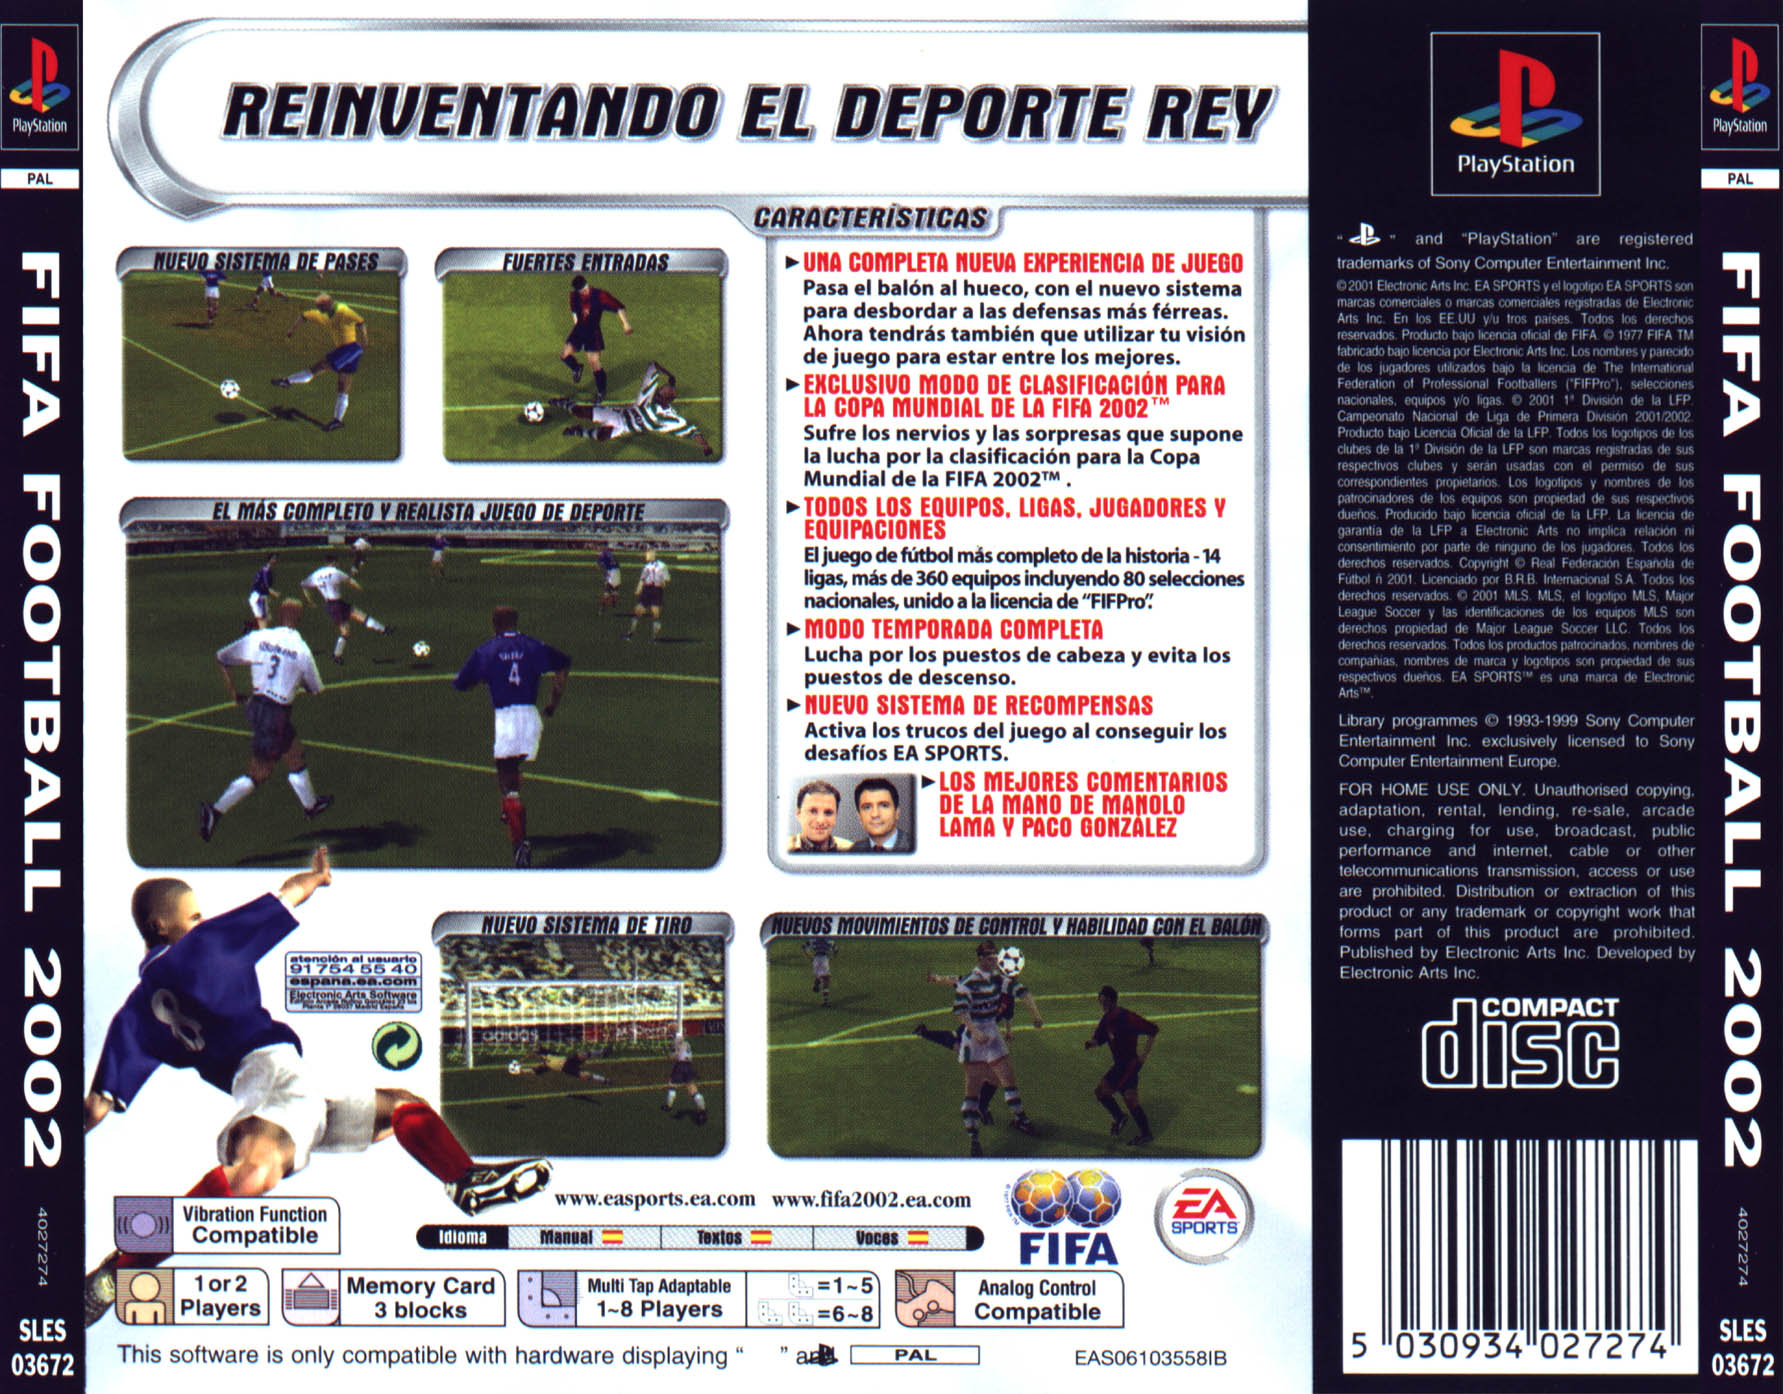 Fifa ps1. Pro Evolution Soccer 2002 ps1. FIFA 2002 ps1. Сони ПС 2 ФИФА 2002. FIFA 2005 ps1.